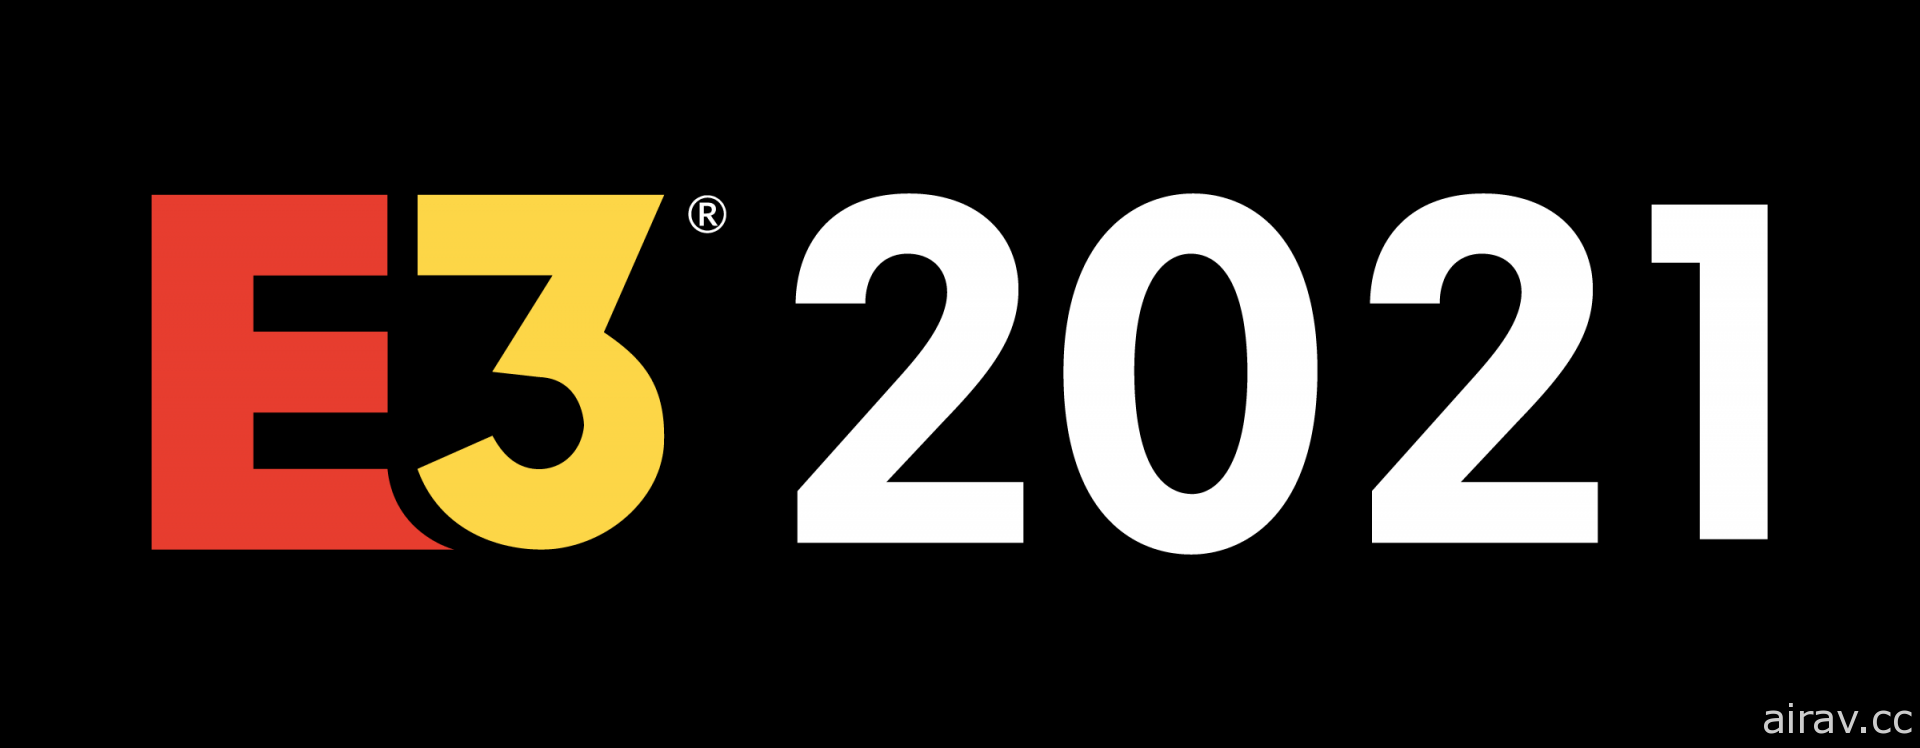 【GNN 大調查】2021 年 E3 展最期待遊戲與最喜歡 / 最失望發表會票選結果出爐